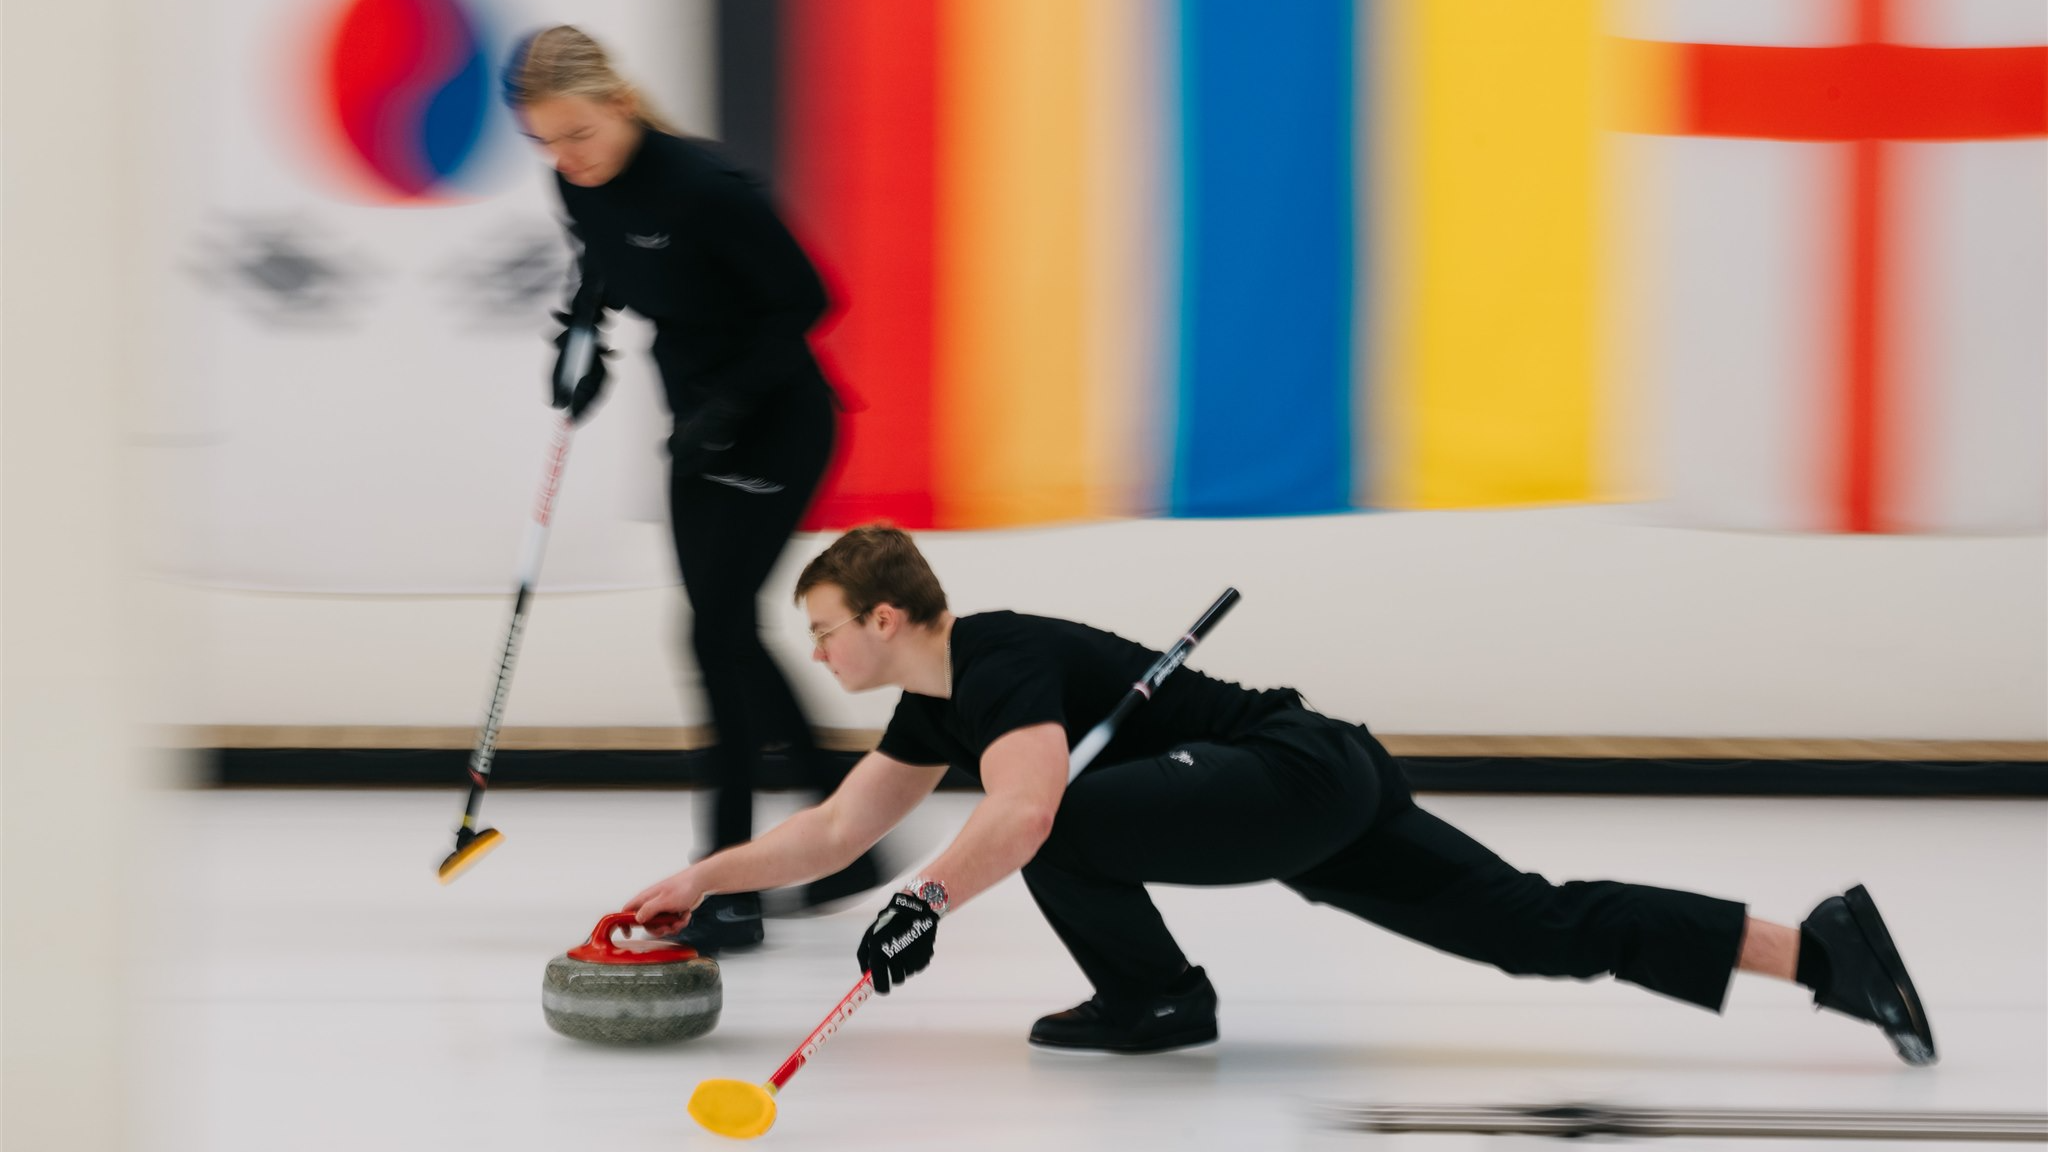 Norisinājies WCT Latvian Mixed Doubles Curling Cup